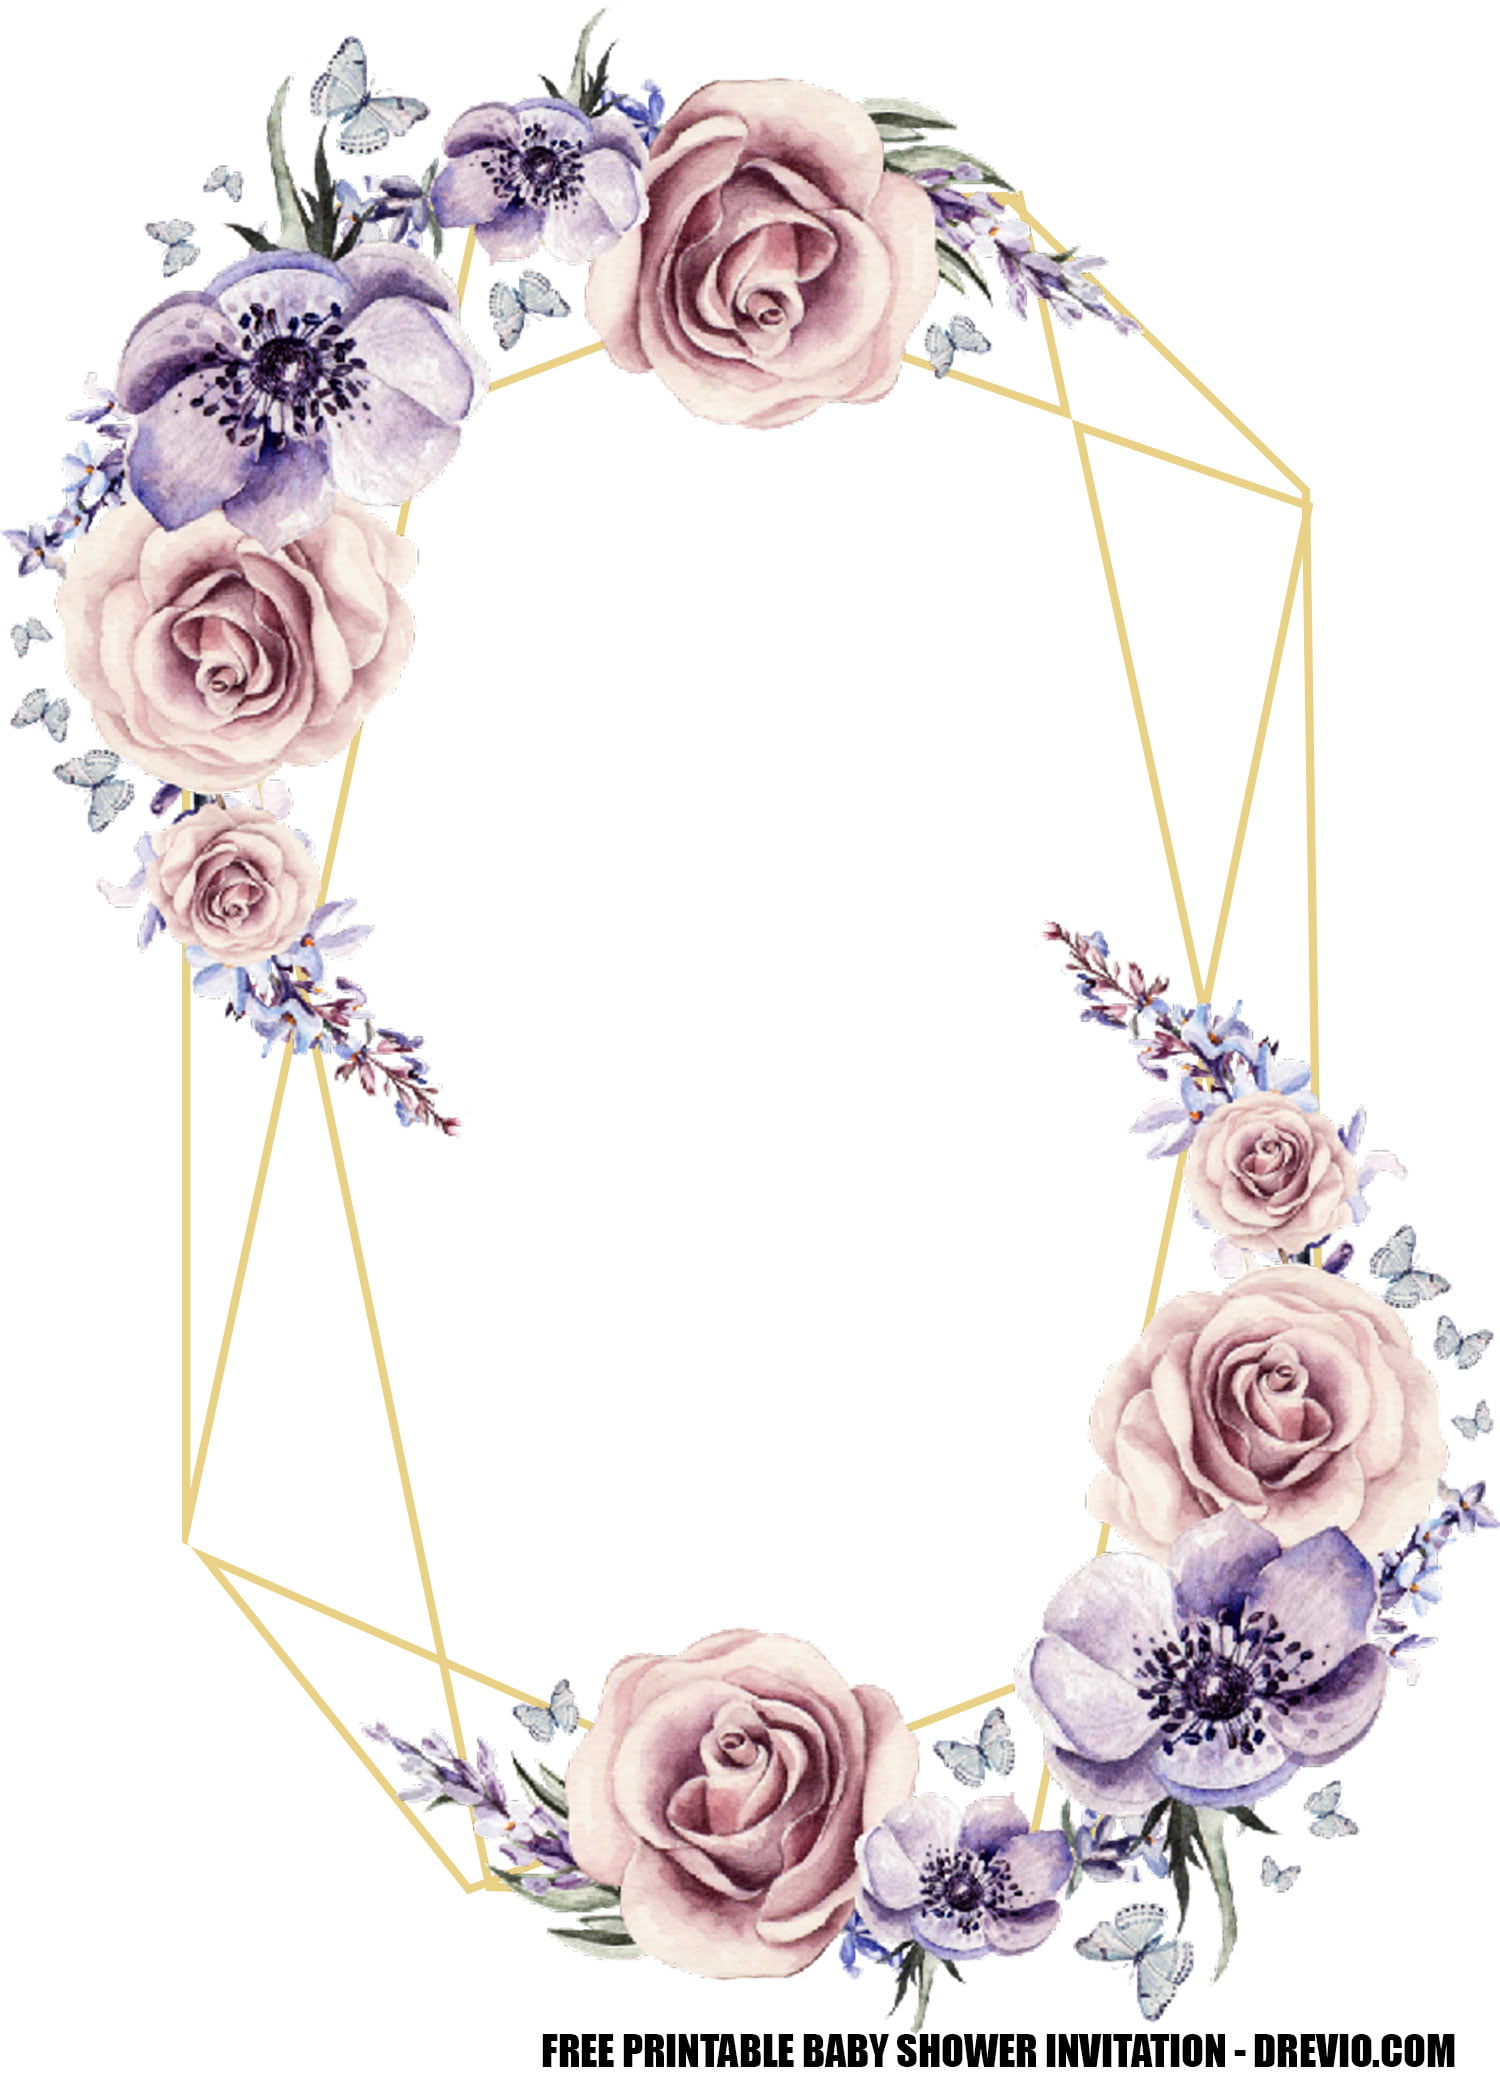 FREE Lavender Rose Wedding Invitation Templates Download Hundreds